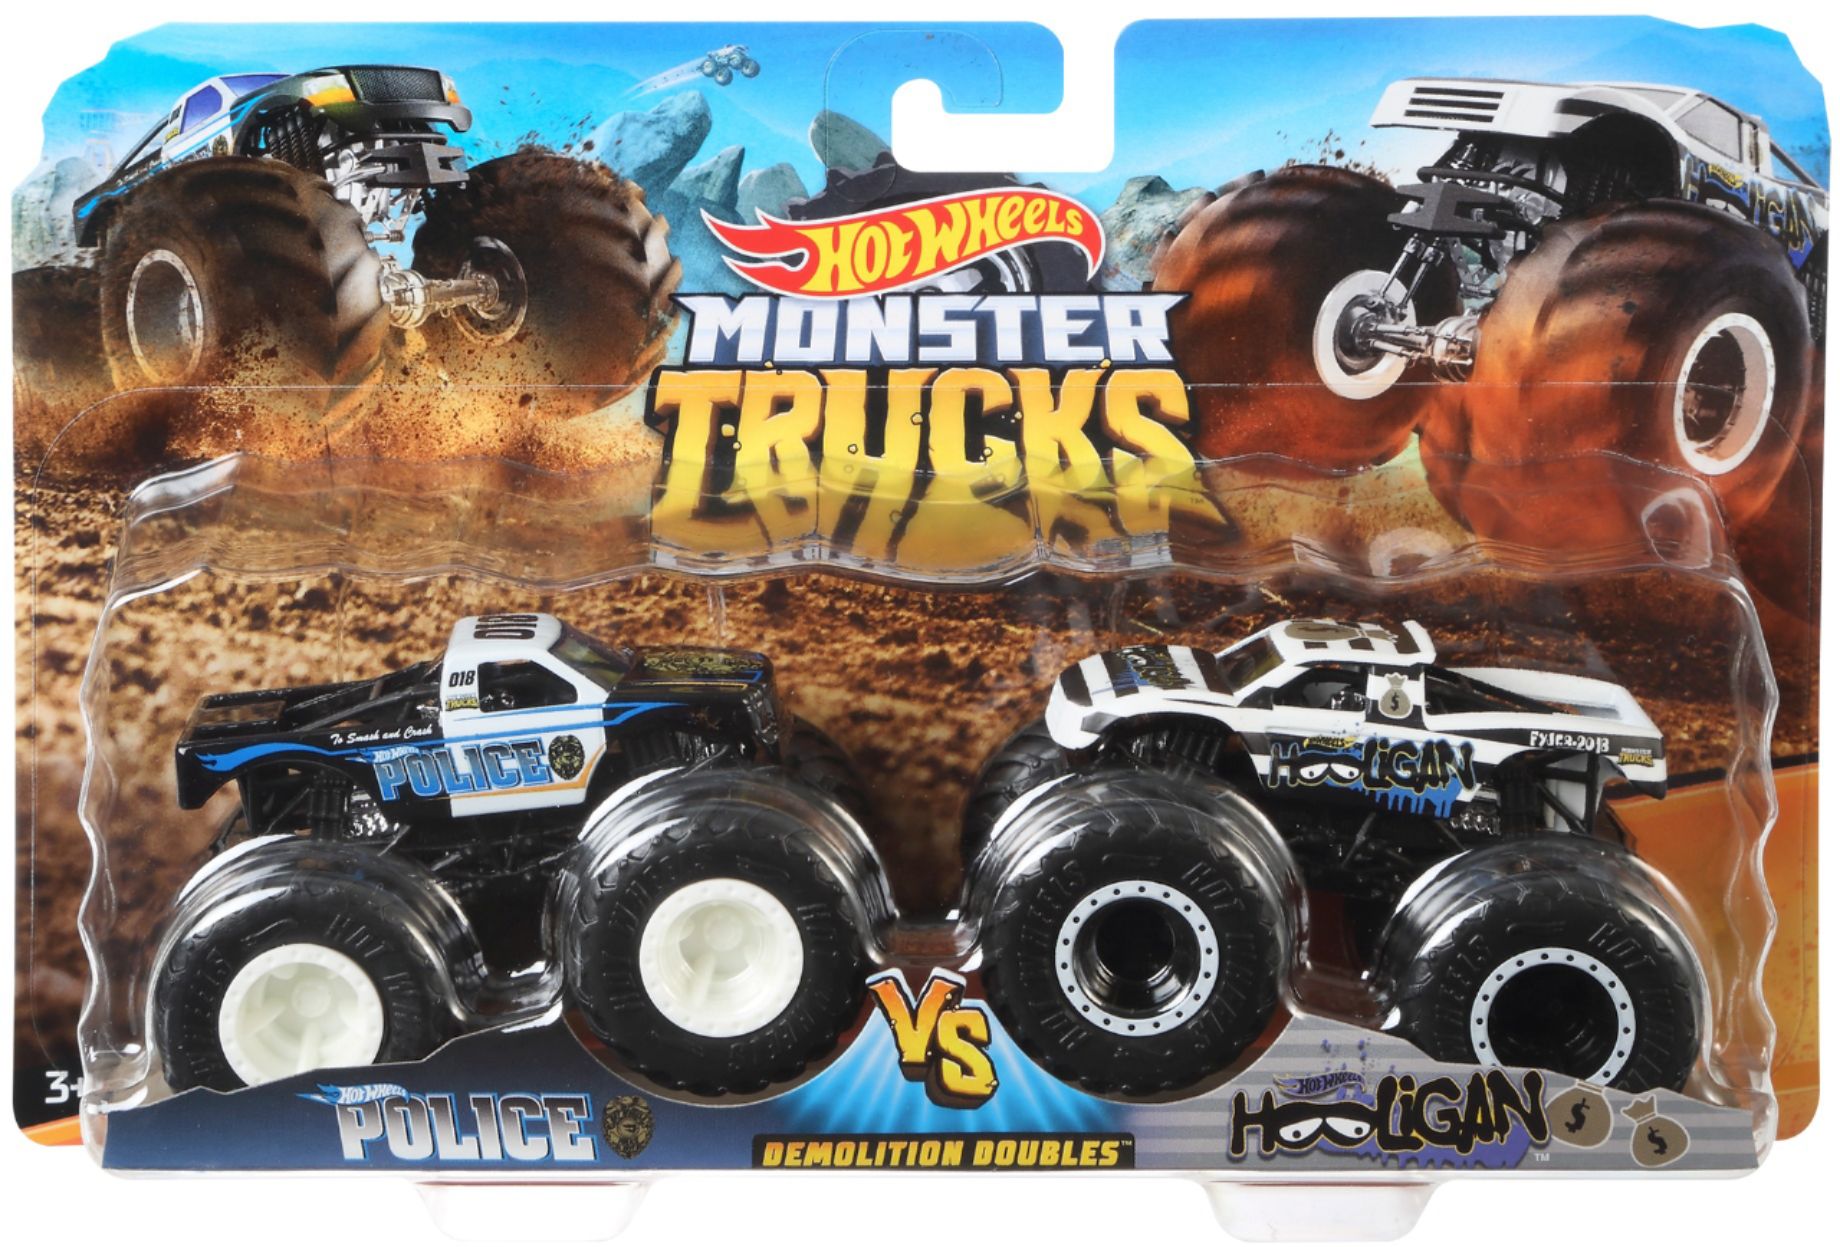 Hot Wheels Monster Trucks Demolition Doubles MONSTER PORTIONS vs